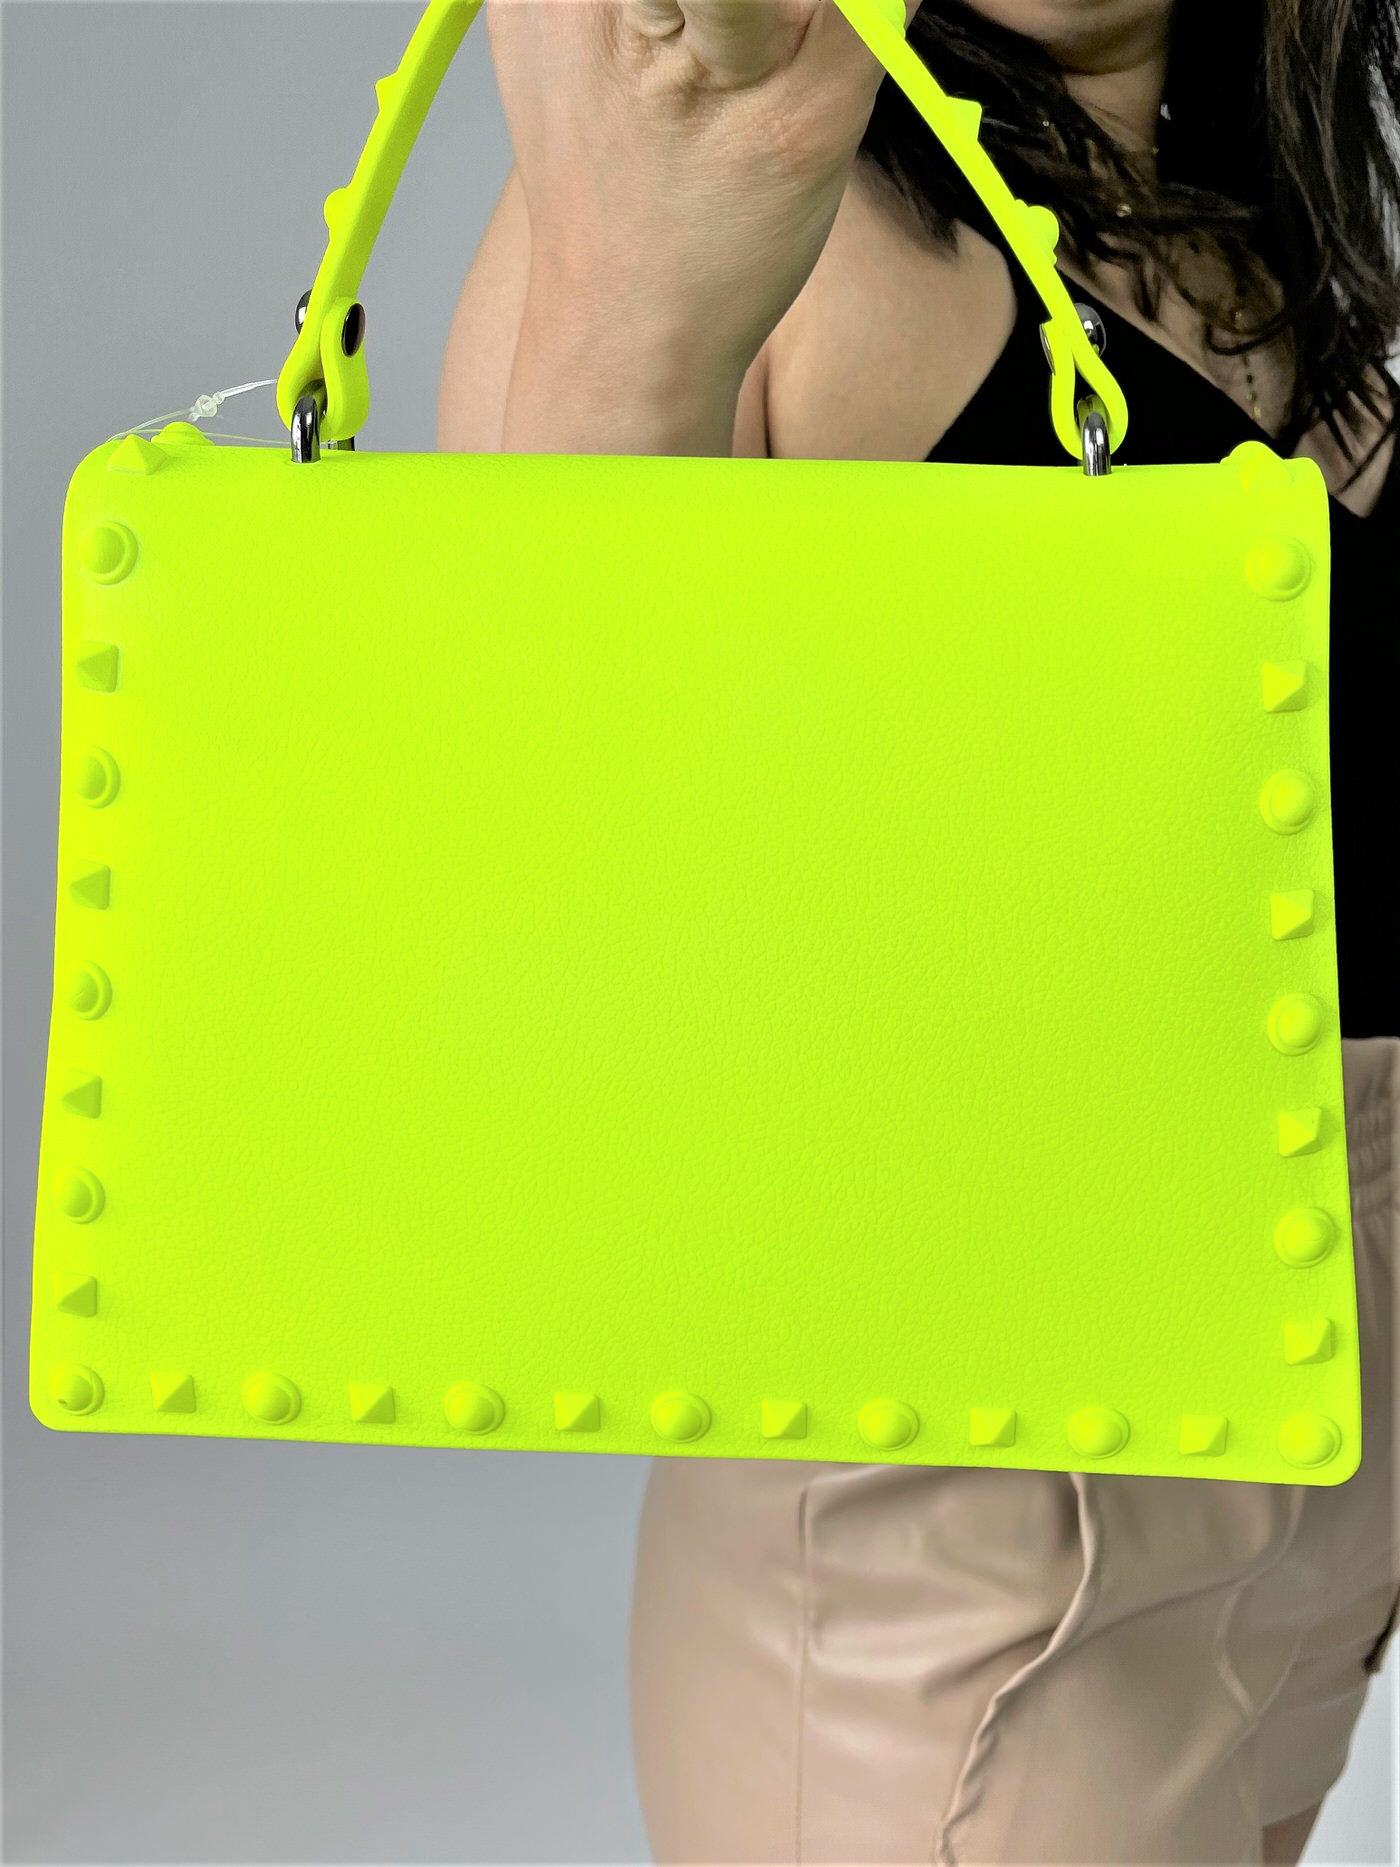 Miinafashiononlineshopgelbehandtasche, Handtasche für Damen in grellen Farben Miina Fashion Online Shop